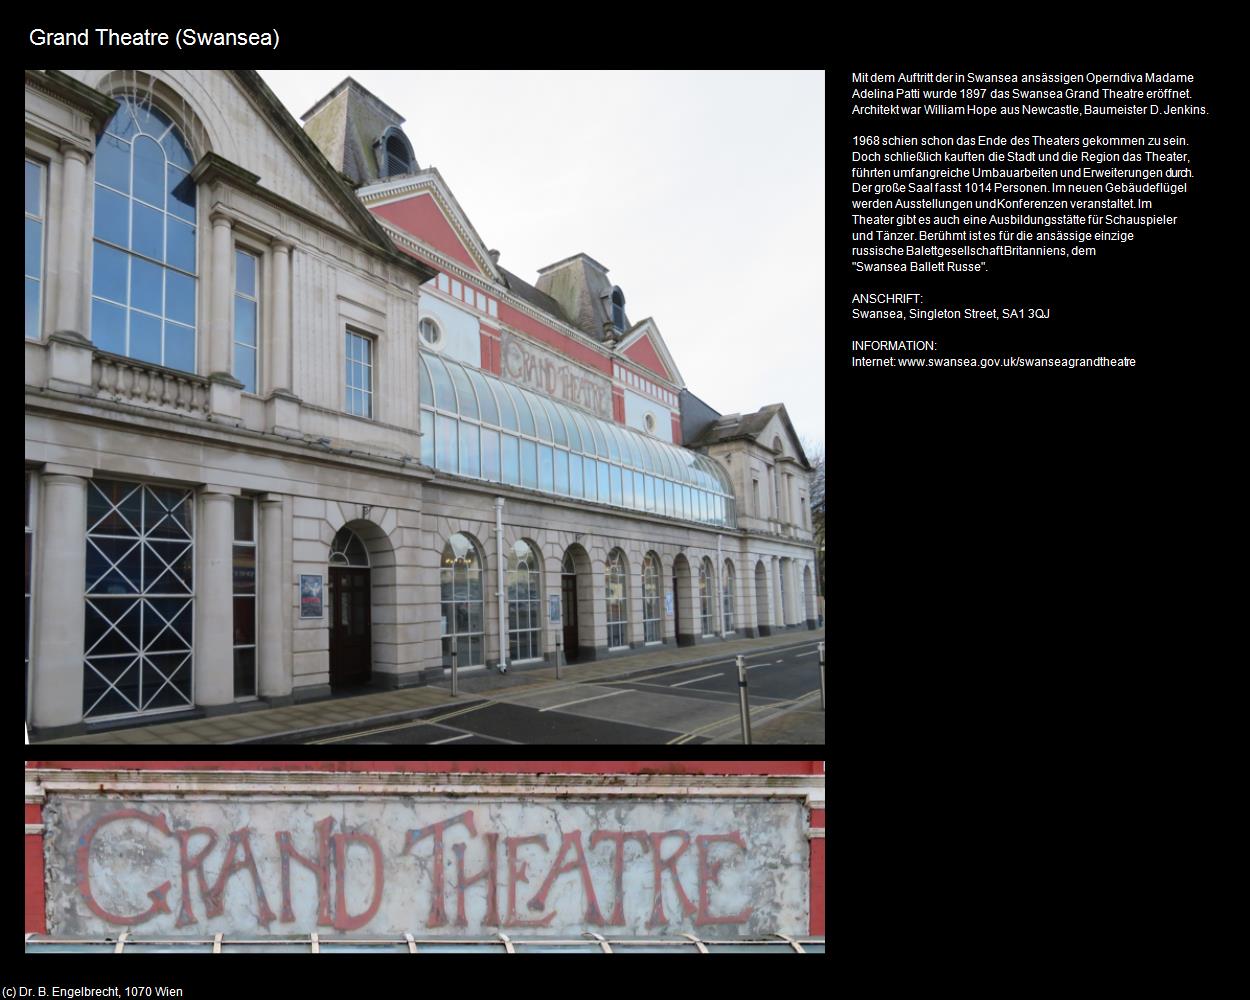 Grand Theatre (Swansea, Wales) in Kulturatlas-ENGLAND und WALES